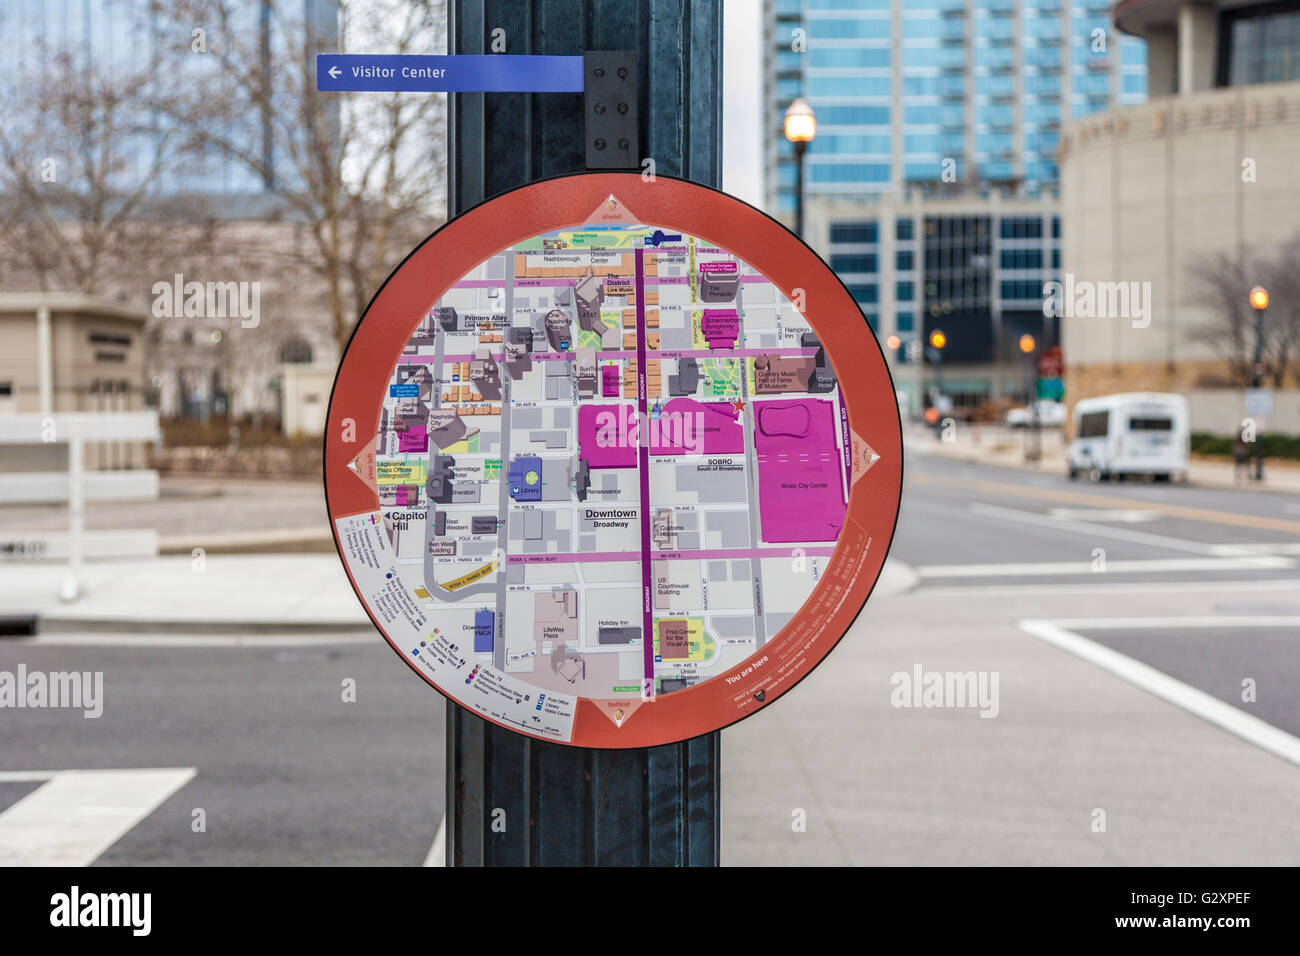 Detaillierte Karte und Verzeichnis hilft Touristen und Besucher finden ihren Weg durch die Innenstadt von Nashville, Tennessee Stockfoto